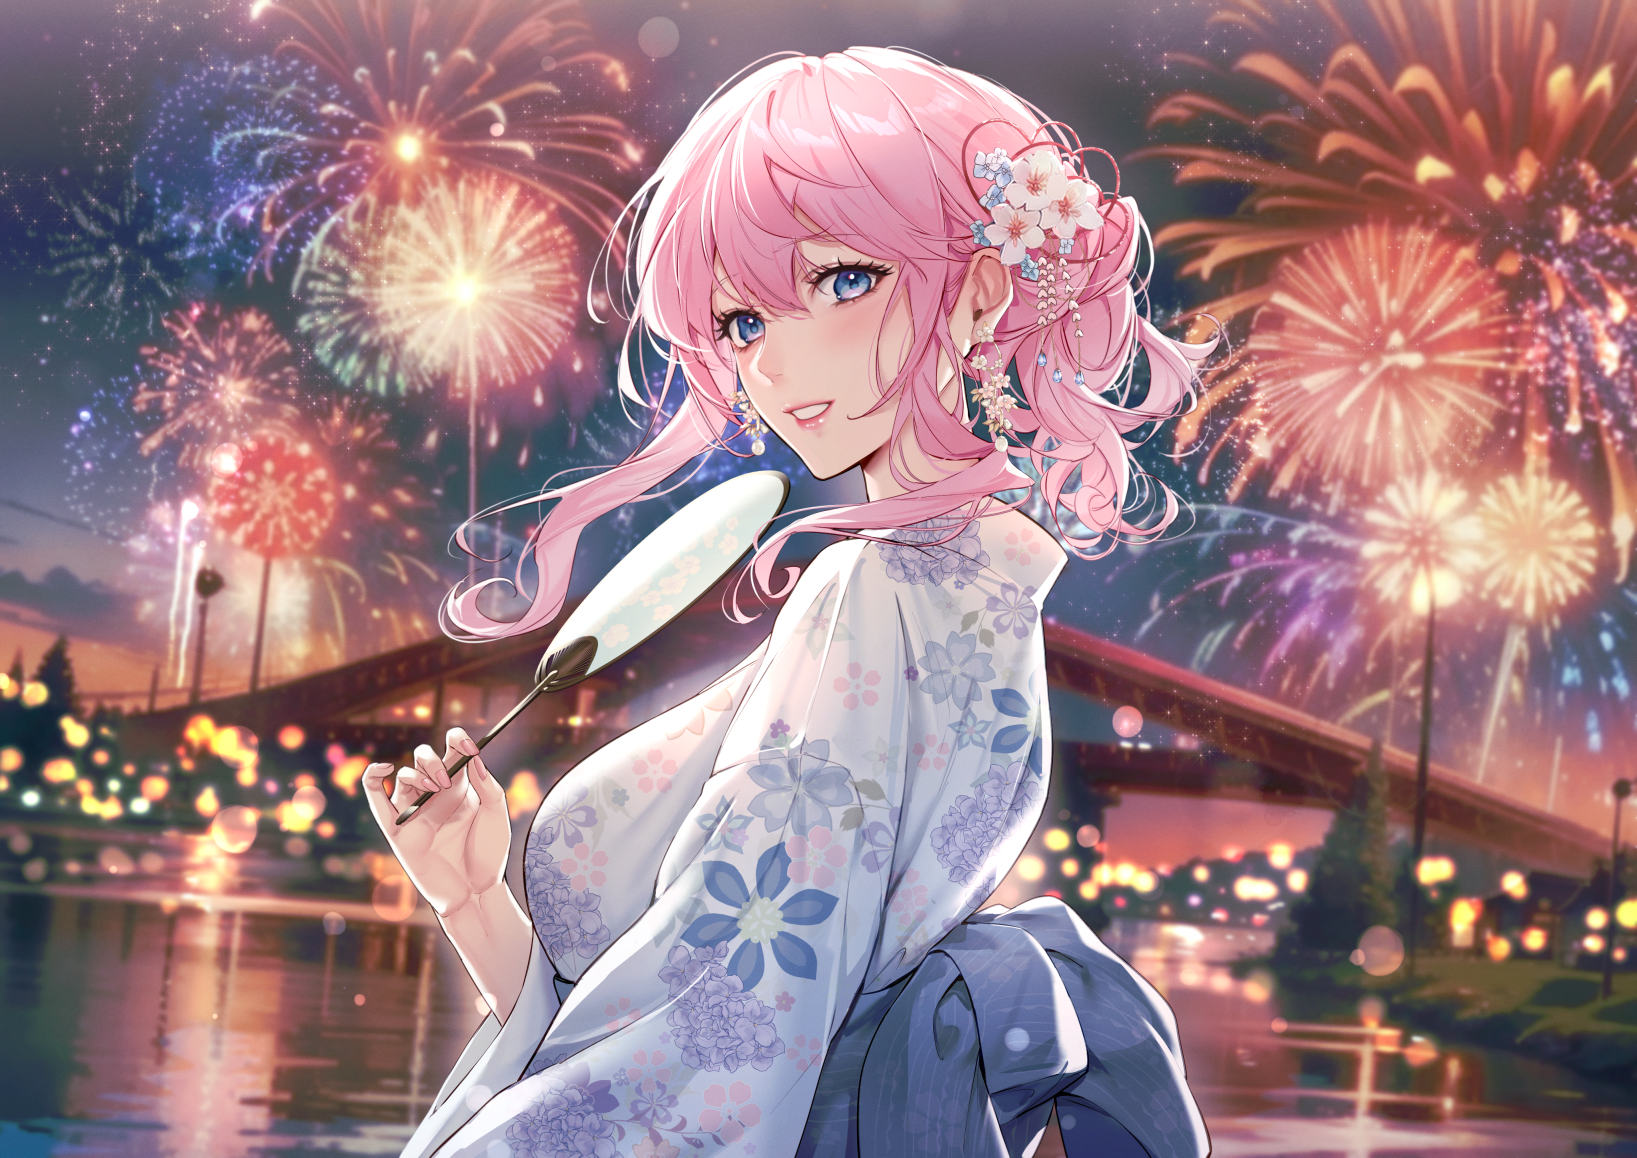 Anime Anime Girls Fireworks Fans Pink Hair Blue Eyes Blushing Smiling Looking At Viewer Kimono Water 1637x1158